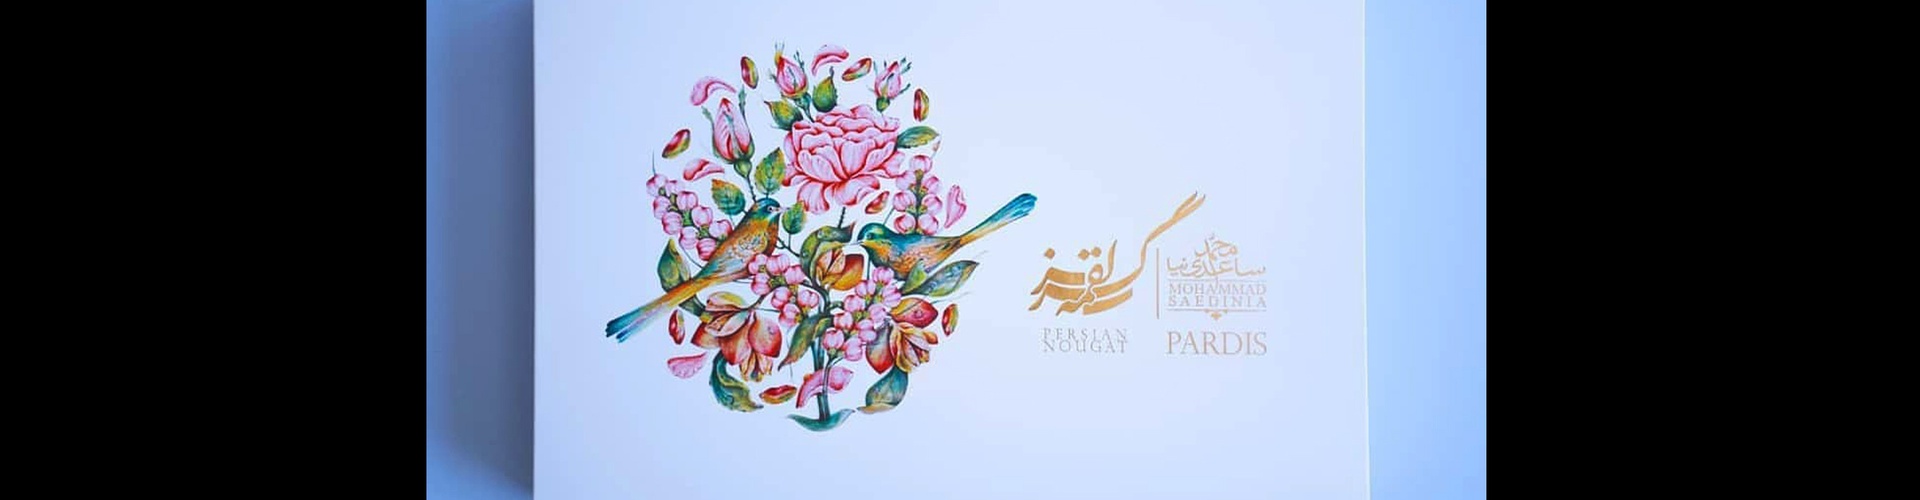 گالری آثار گرافیک رضا برقعی از ایران